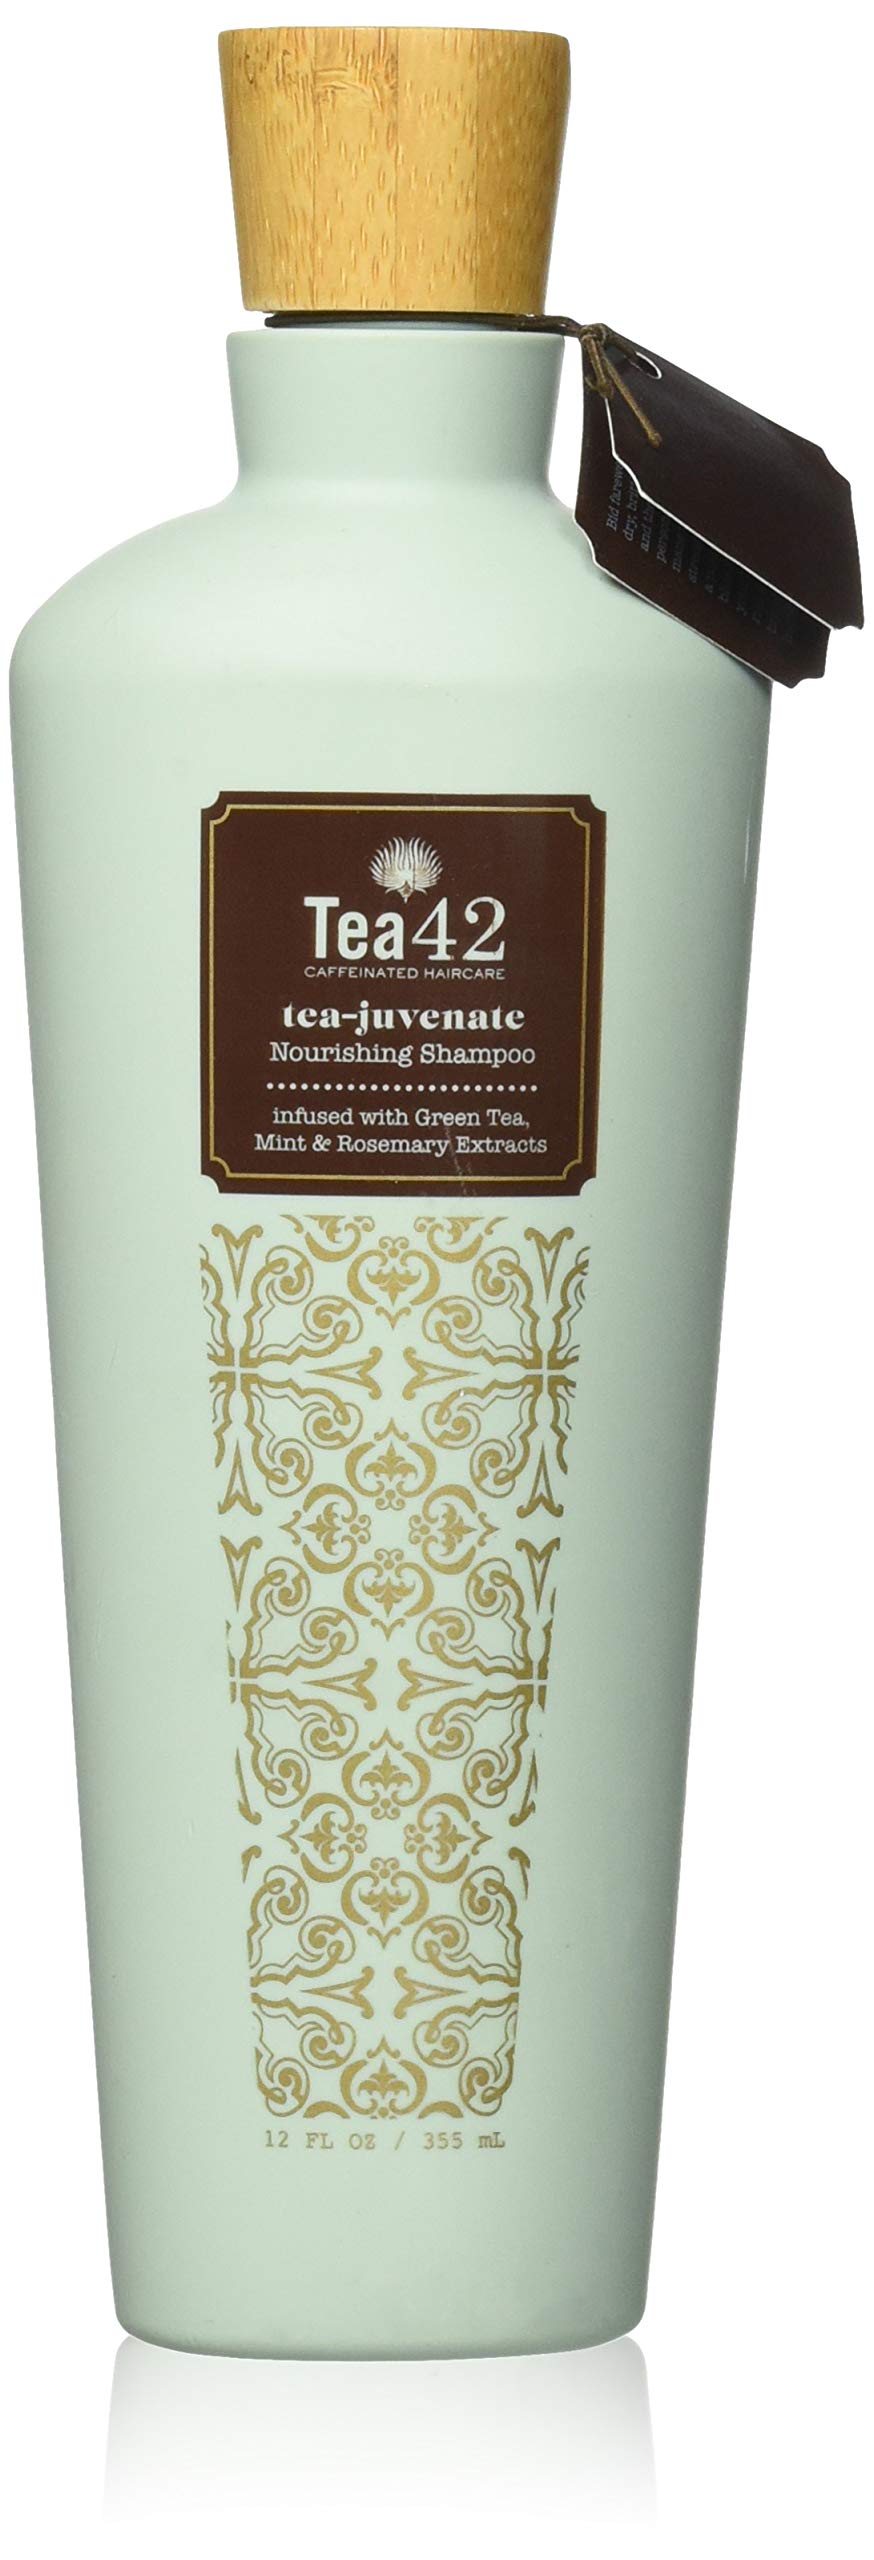 Tea42 - Premium Nourishing Shampoo, Infused Caffeinated Hair Care, Sulfate-Free, 12 Ounce